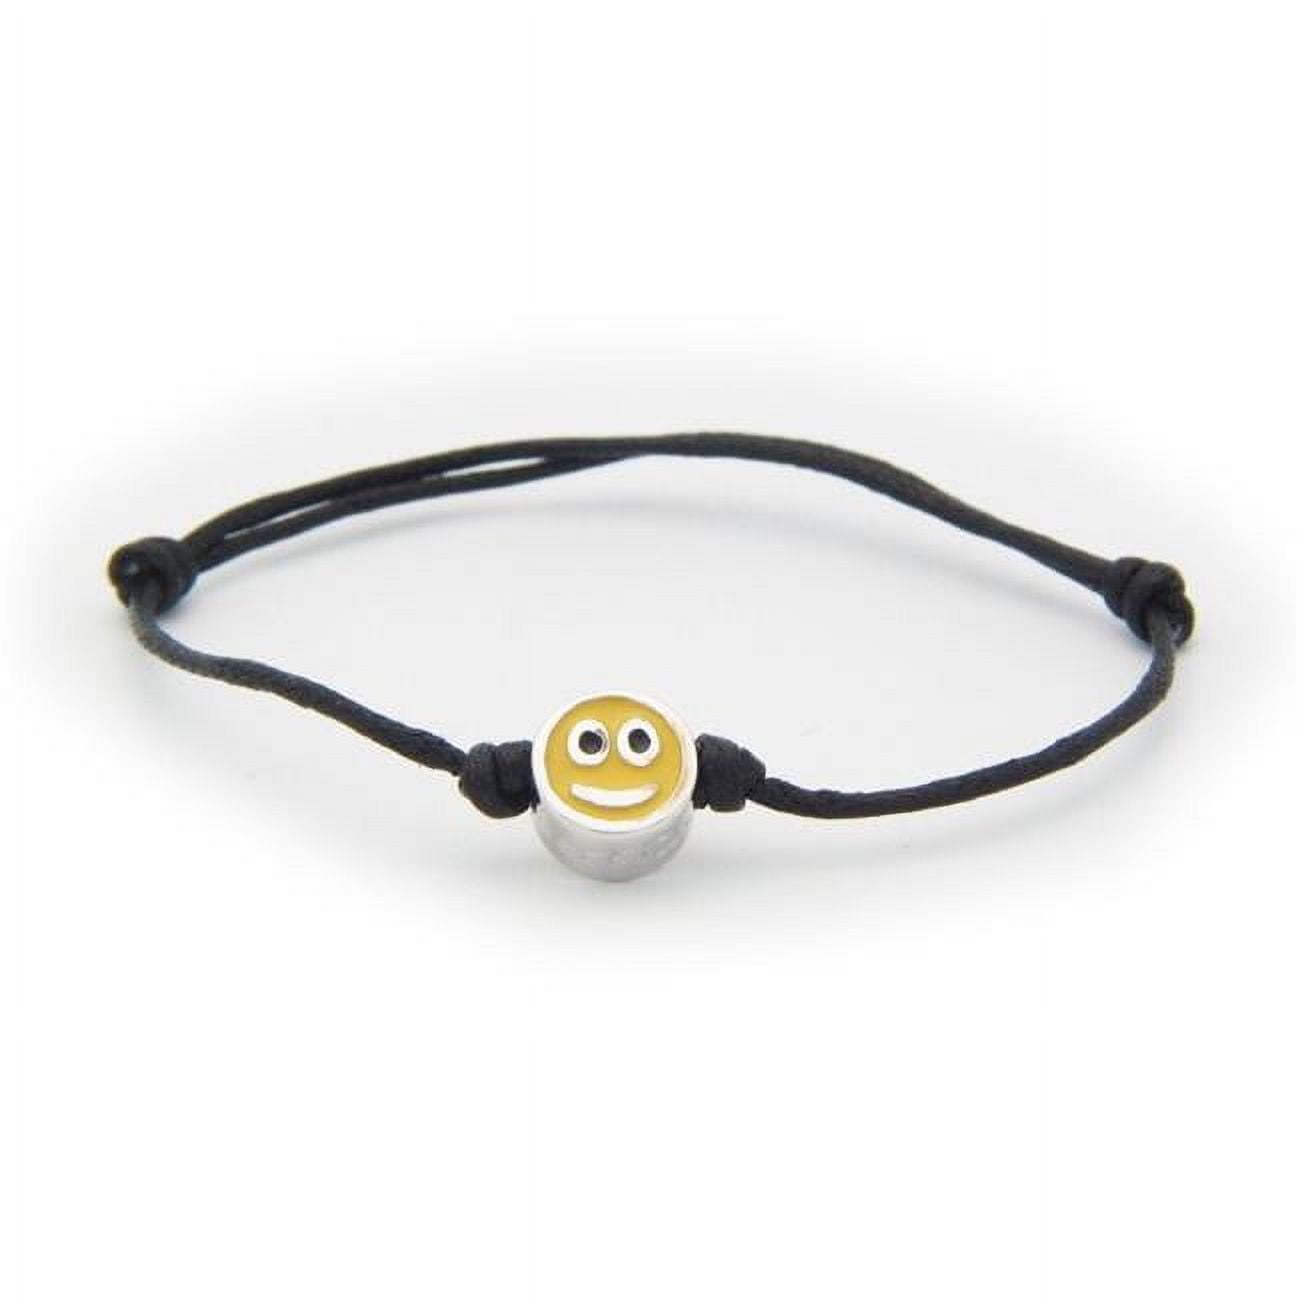 Smile Smile Face Enamel Charm Sterling Silver Adjustable Black Cord Bracelet